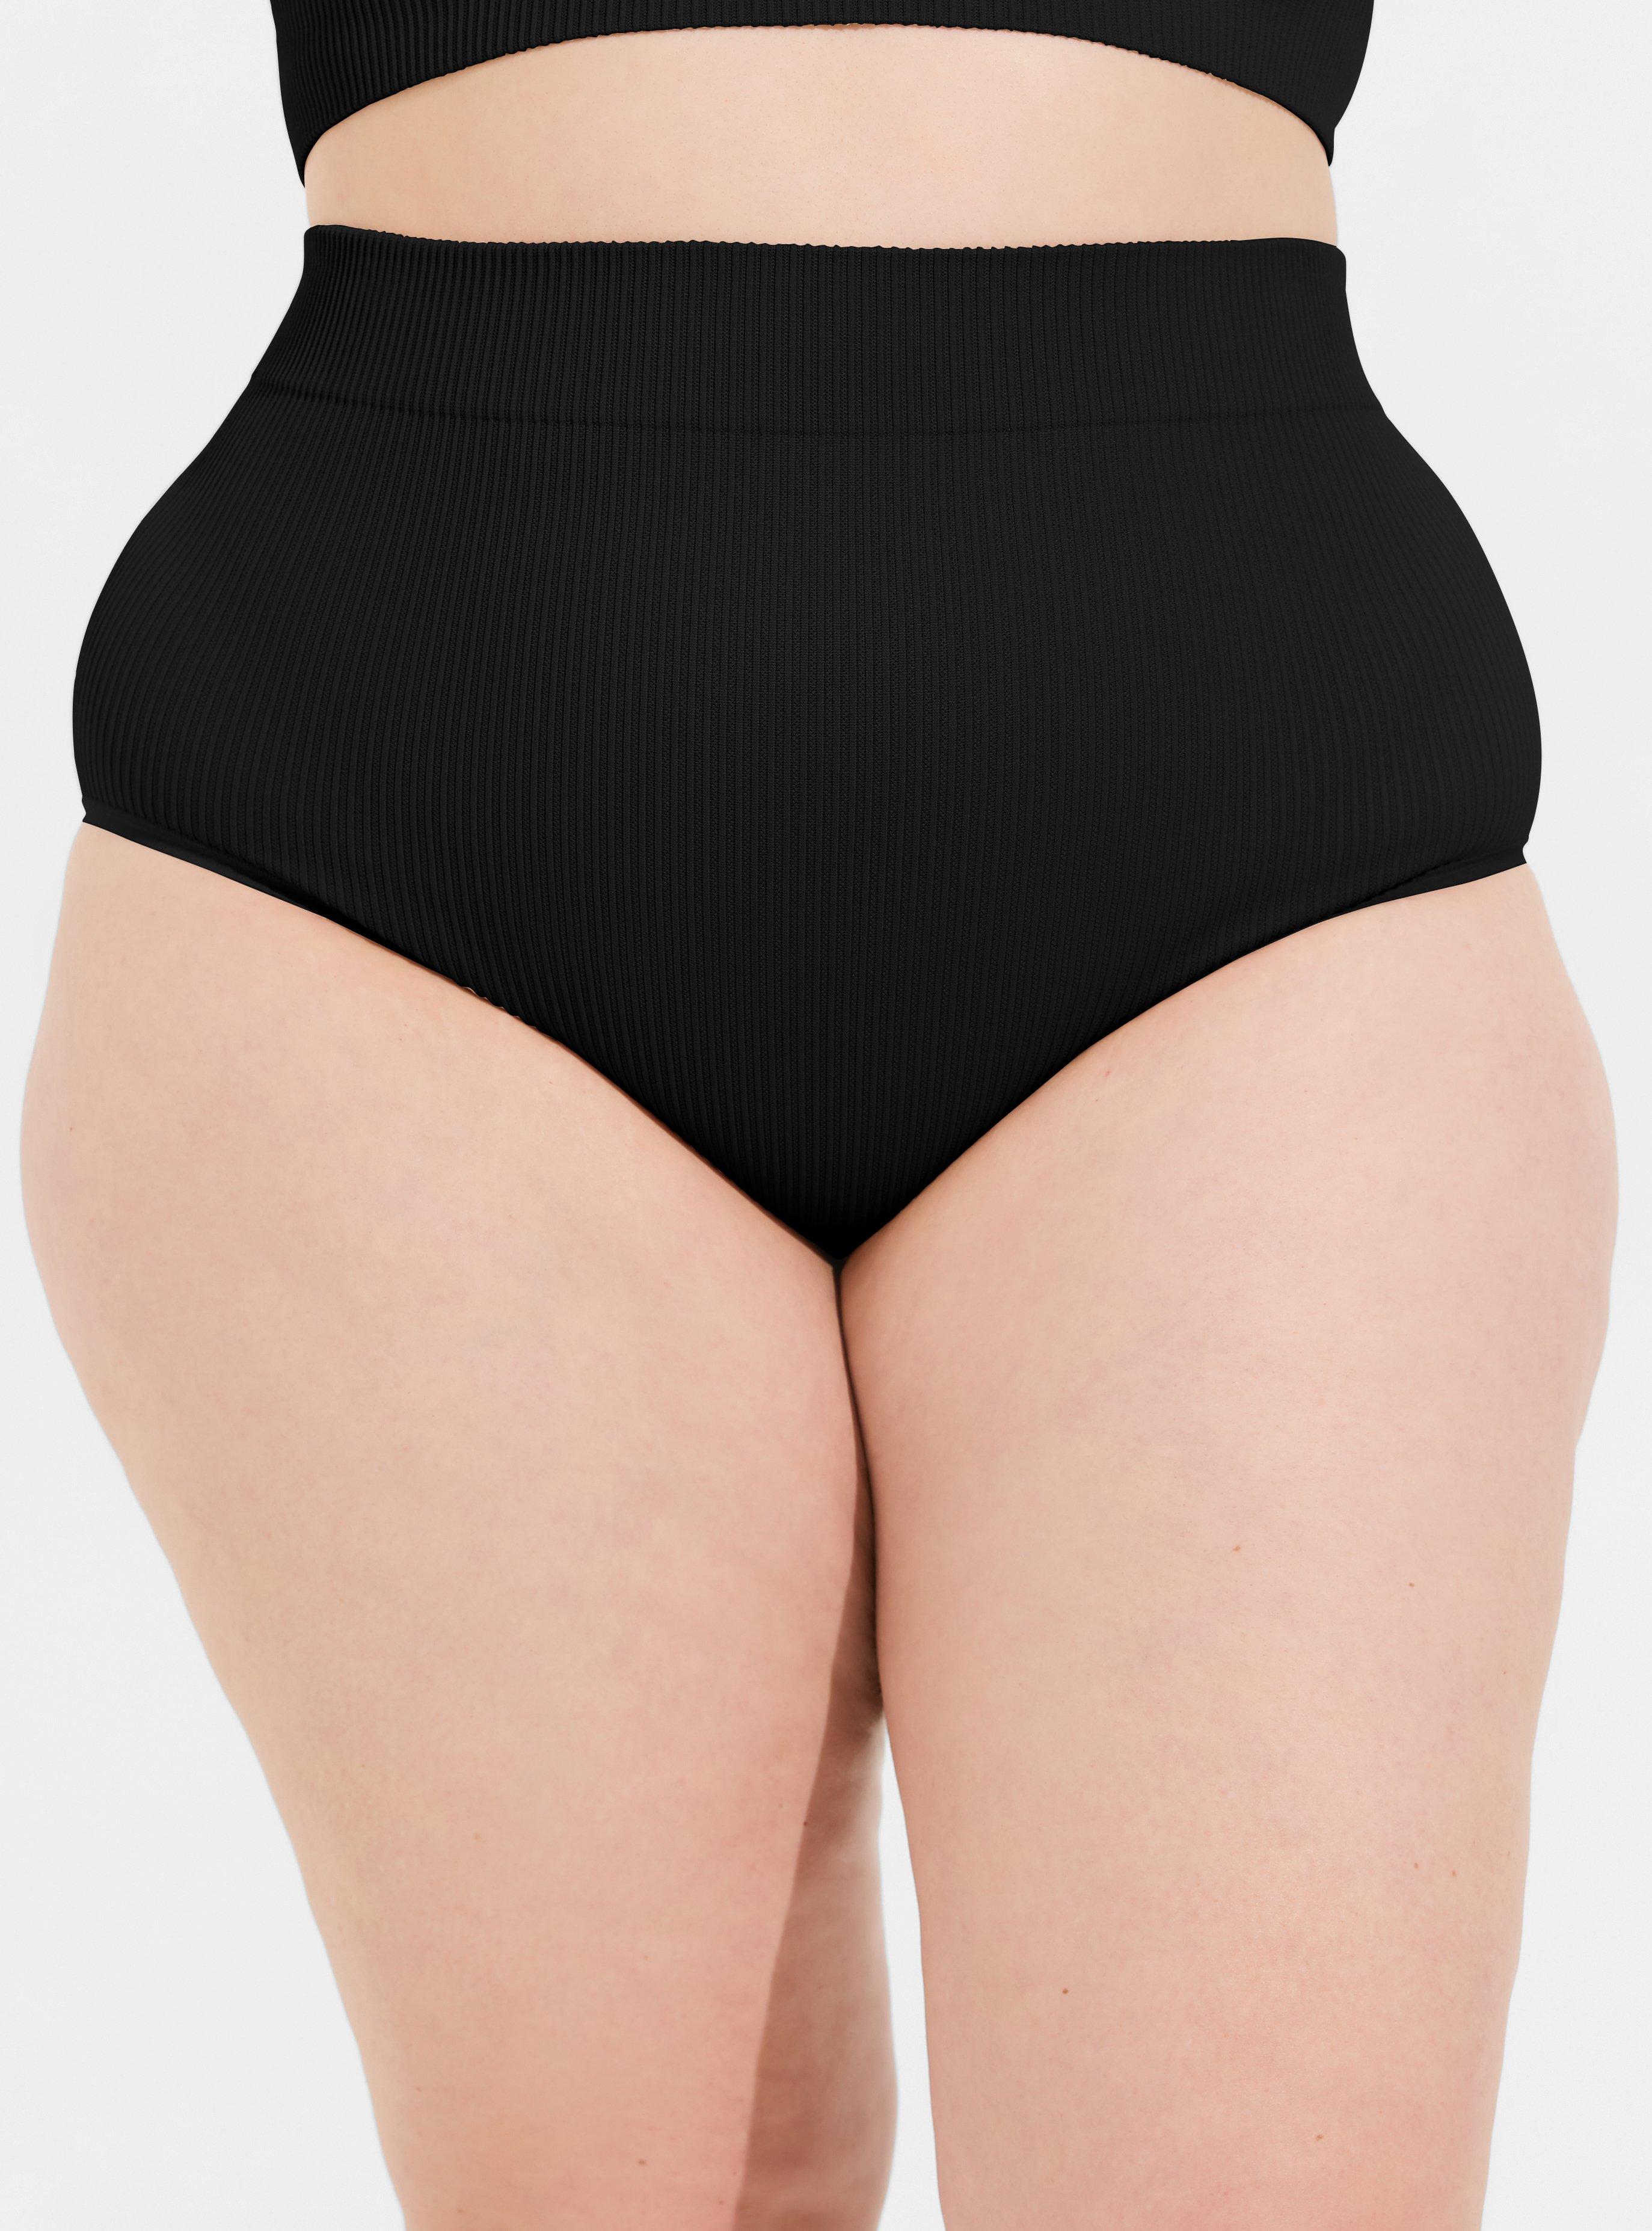 Womens Underwear - Polyester,Spandex Underwear for Women High Waist  Underwear Seamles Briefs Panties Regular and Plus Size